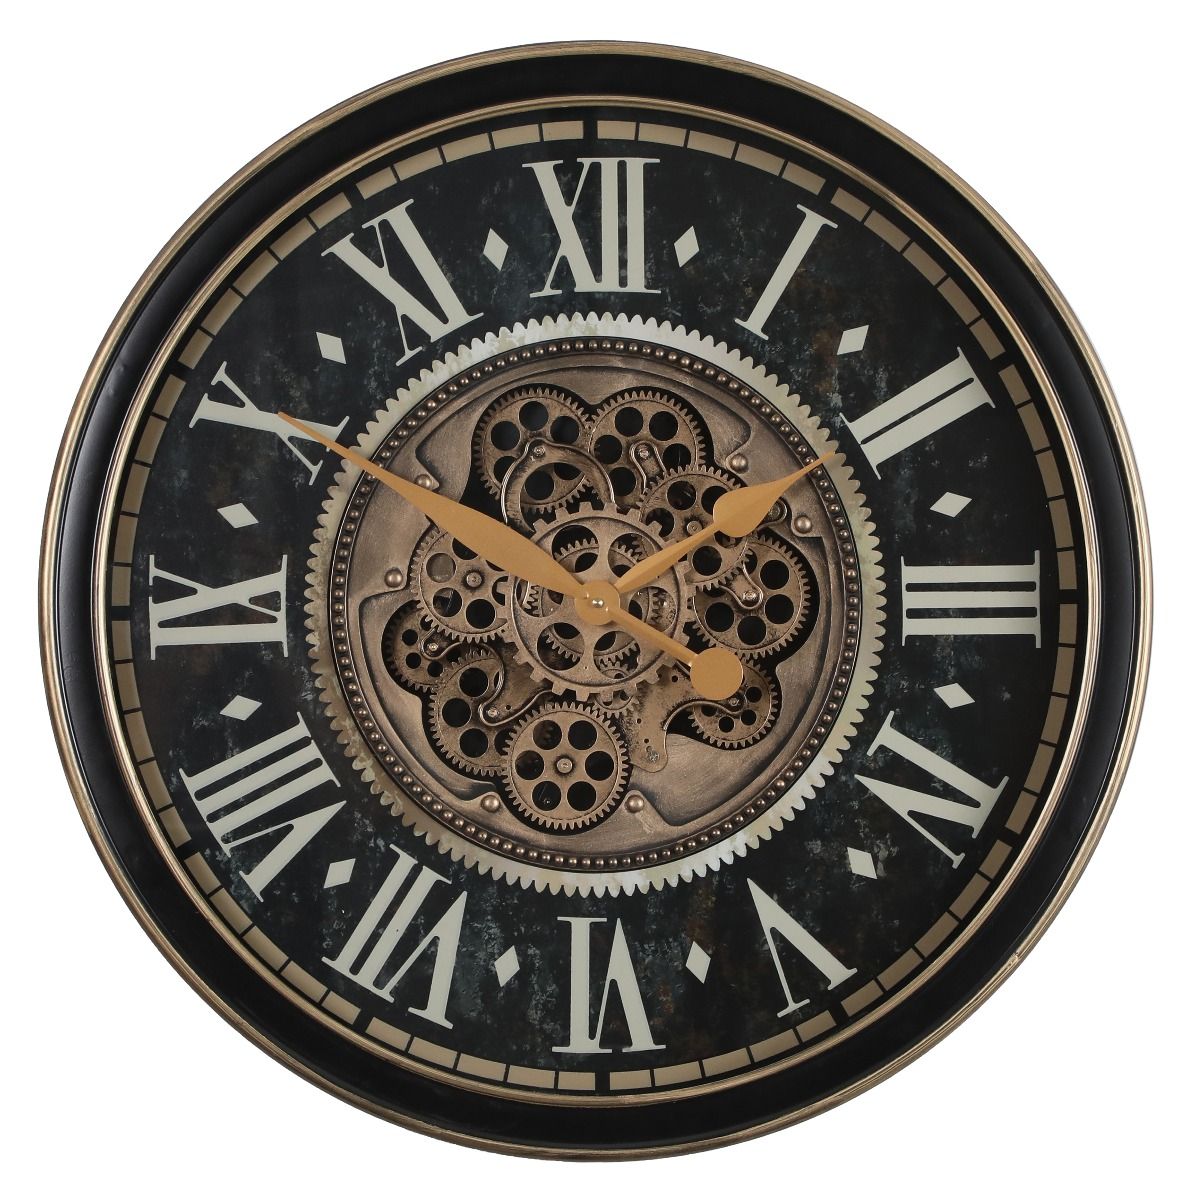 Industrial/vintage-inspired clock range